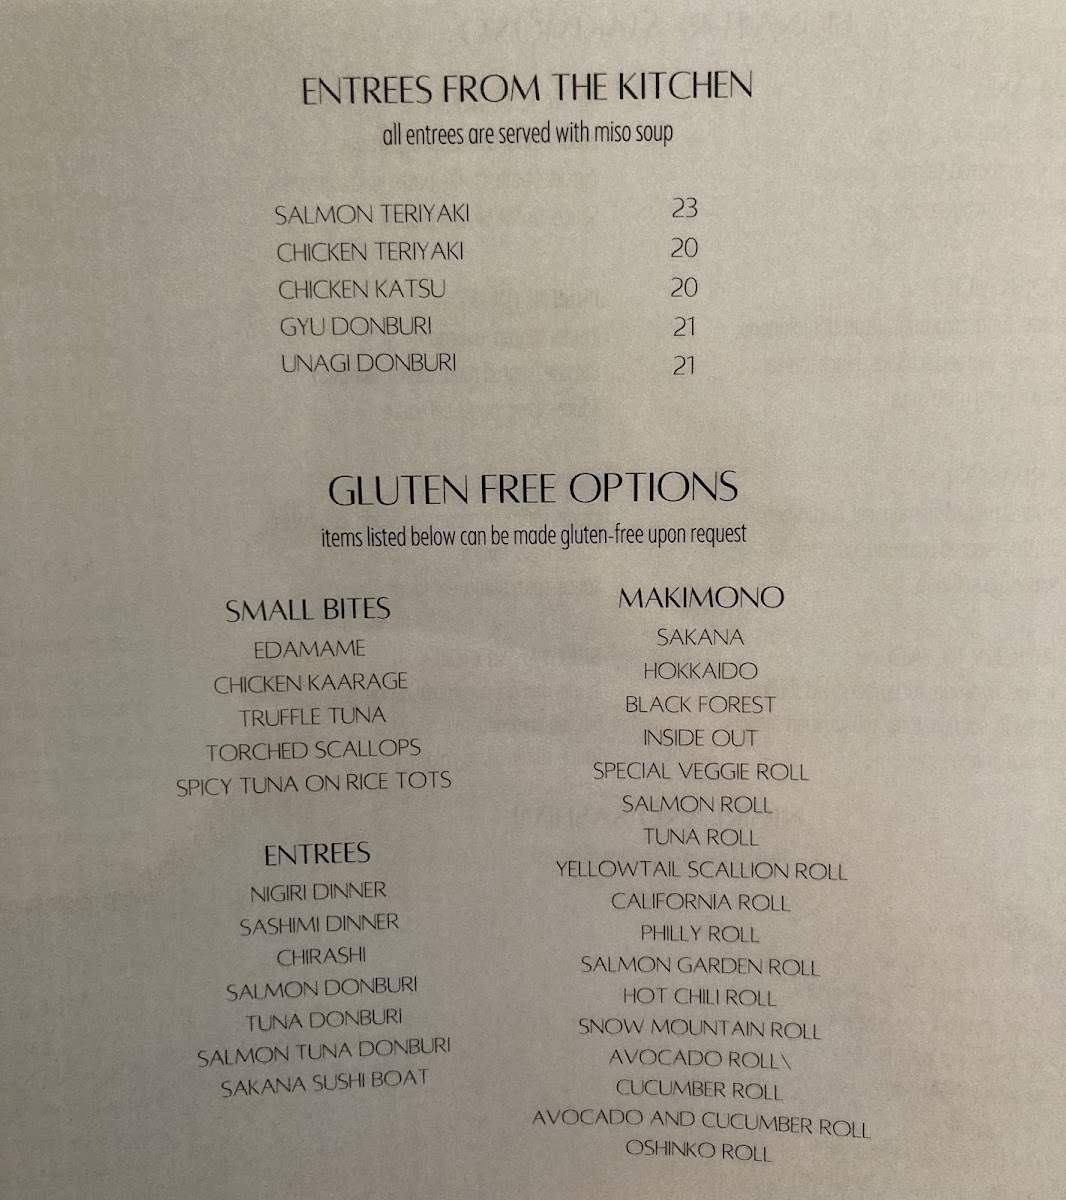 Gluten free menu